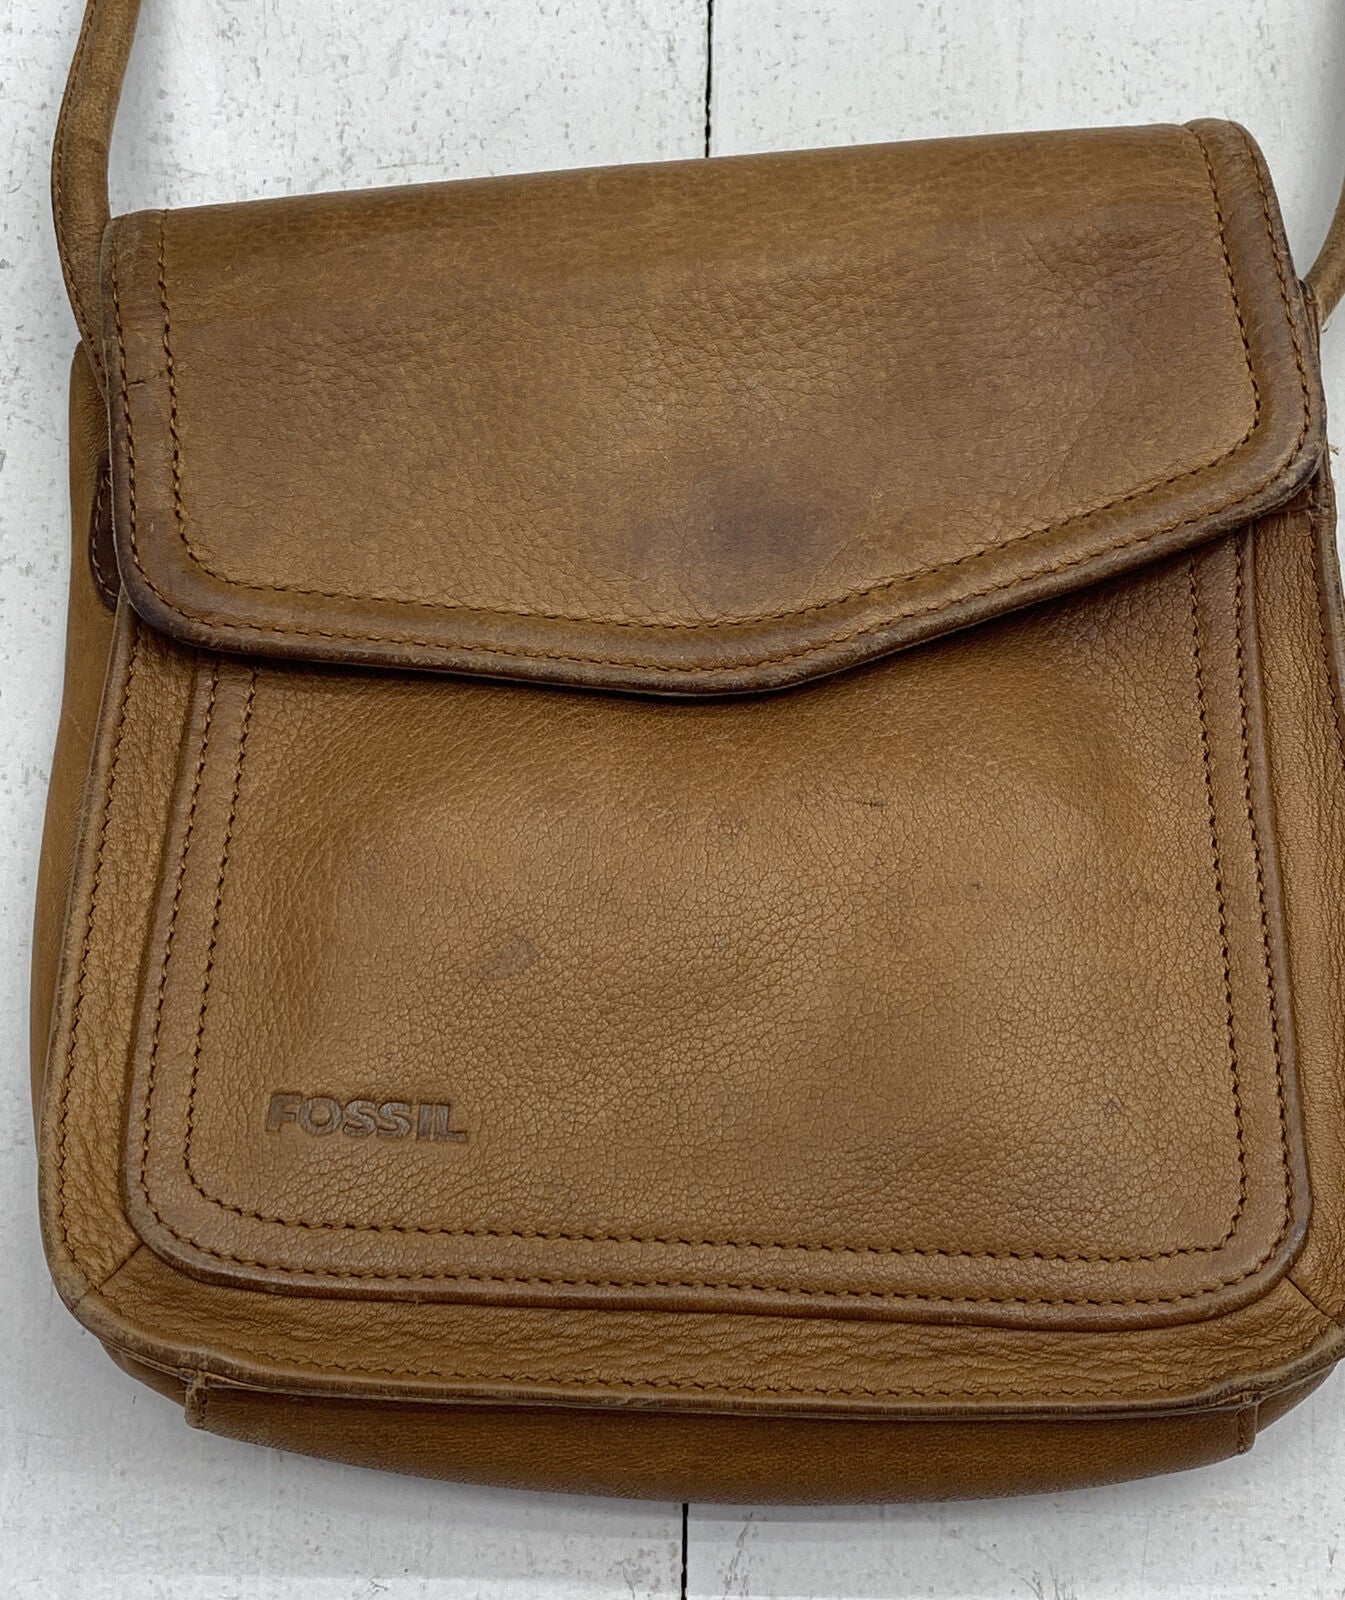 Fossil Fossil Long live vintage 1954 key shoulder leather bag | Grailed